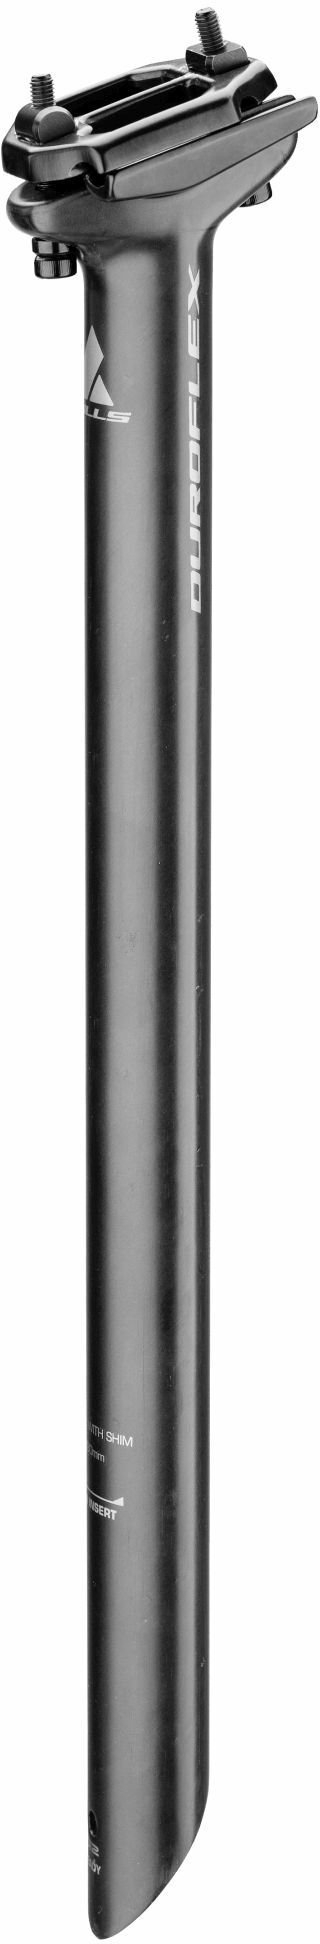 BULLS Sattelstütze Duroflex (31,6mm)